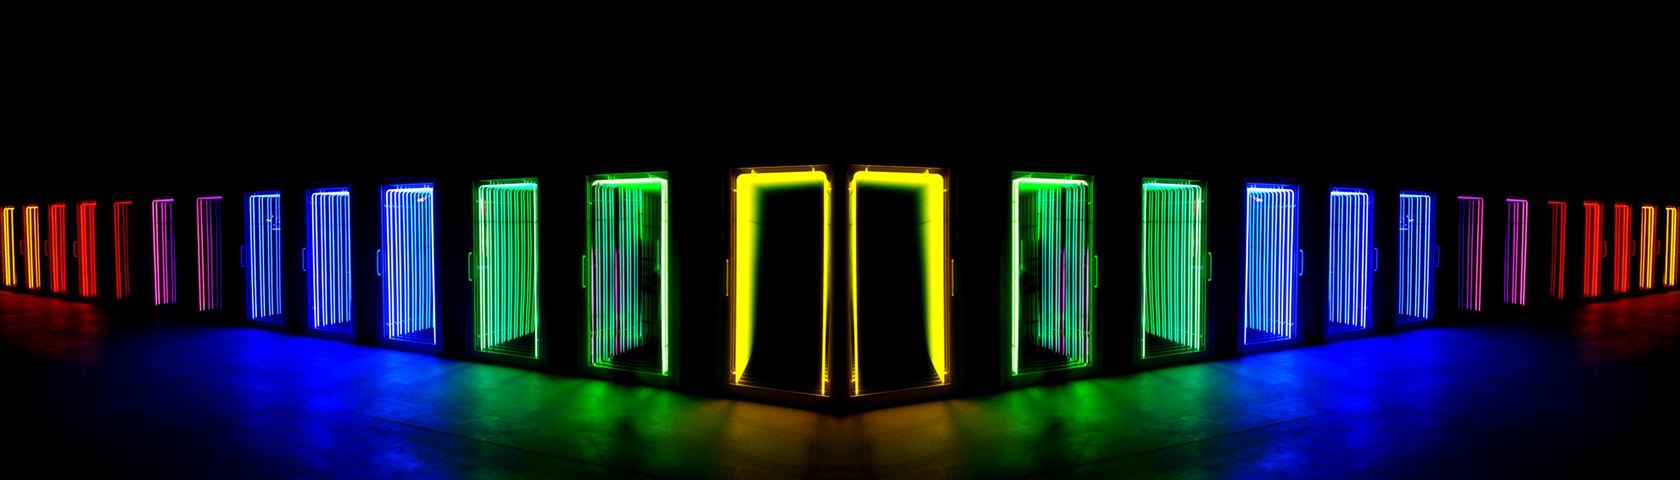 Neon Doors